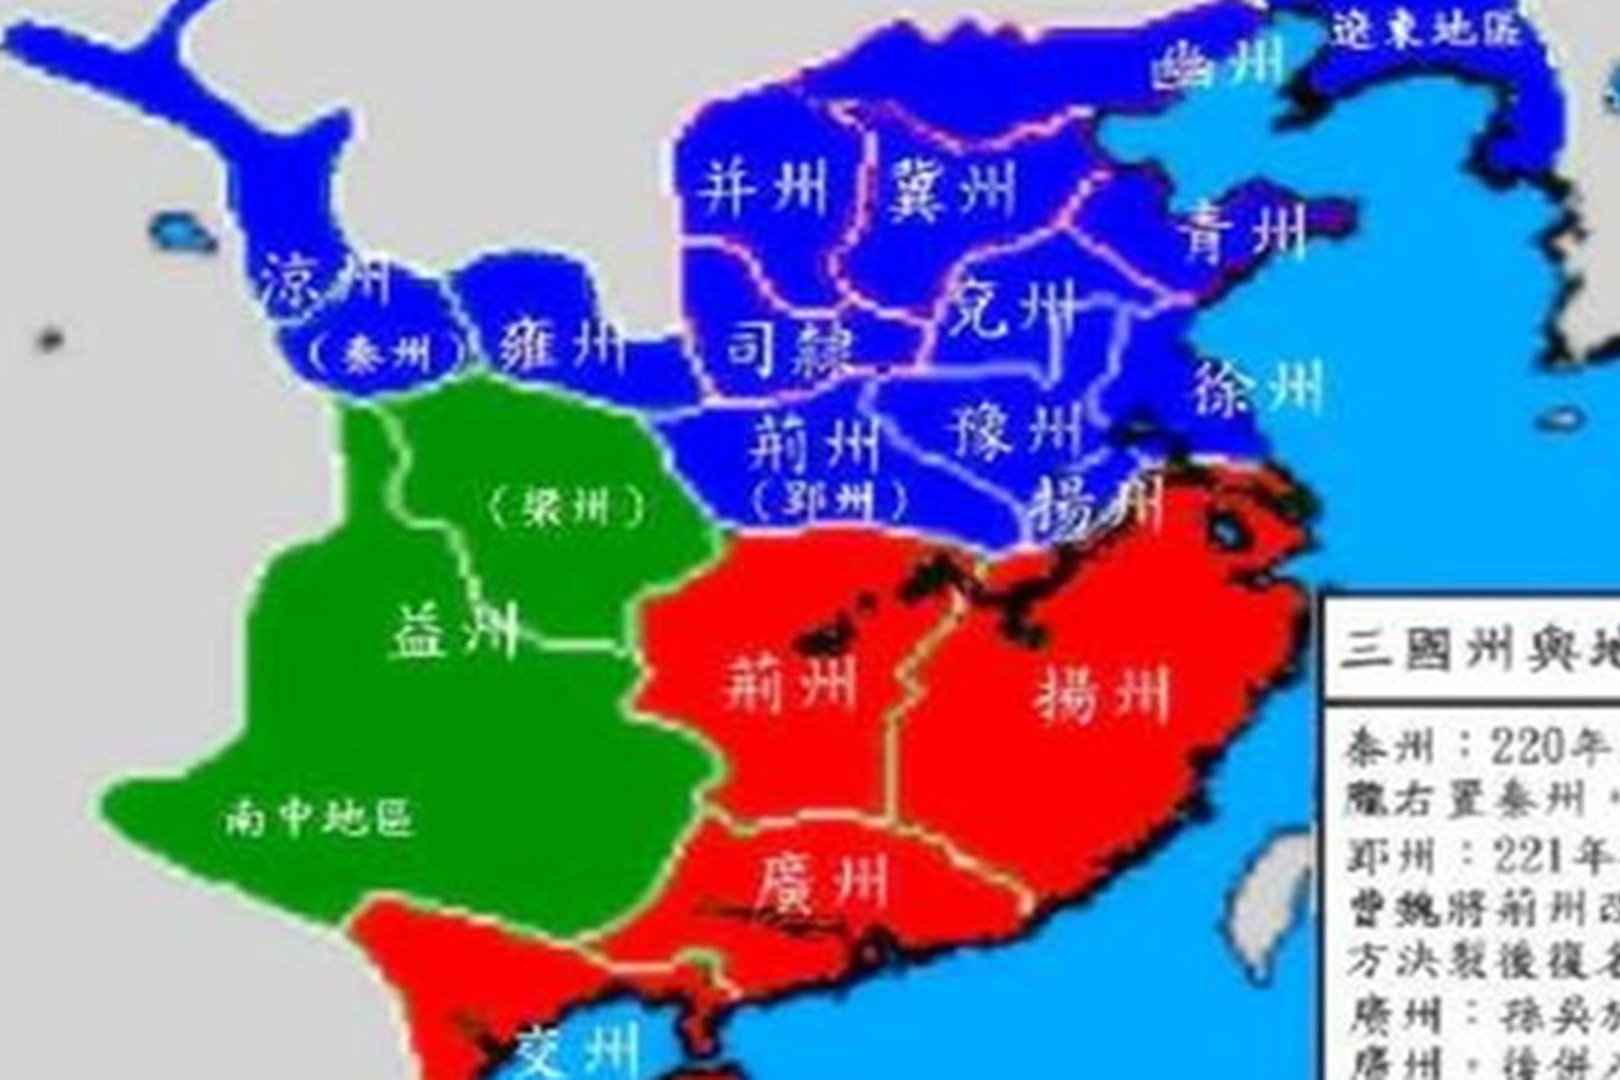 “荆州”到底是谁的？一些史书说刘备借荆州，这种说法缘何而起？